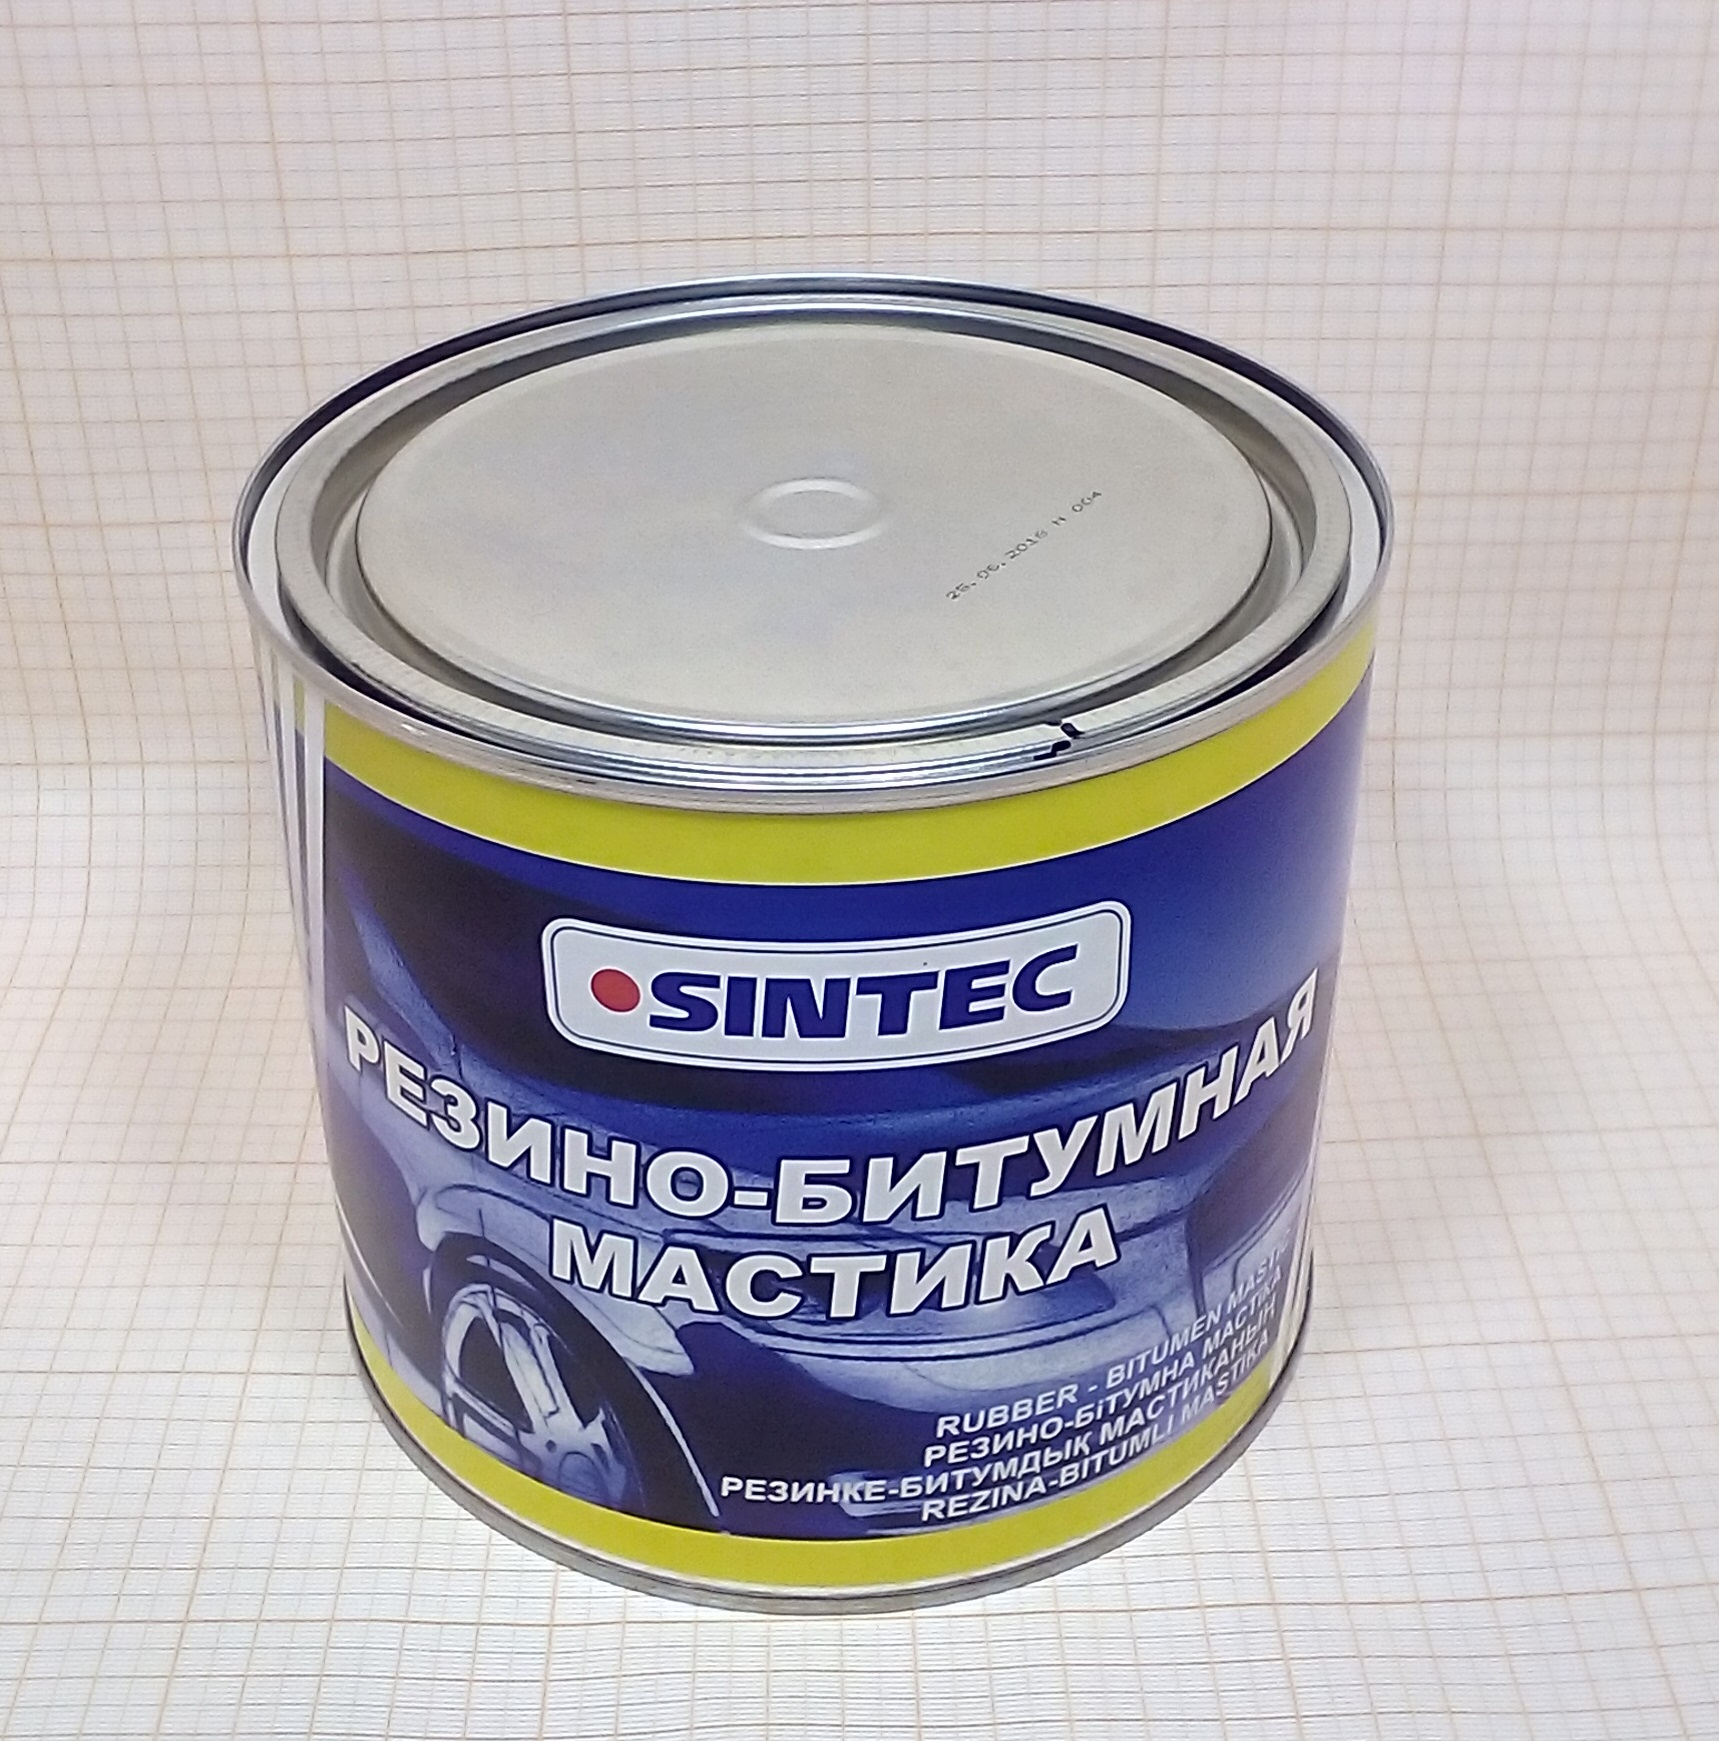 Мастика 2.0 кг(Sintec) каучуко-битумная Россия